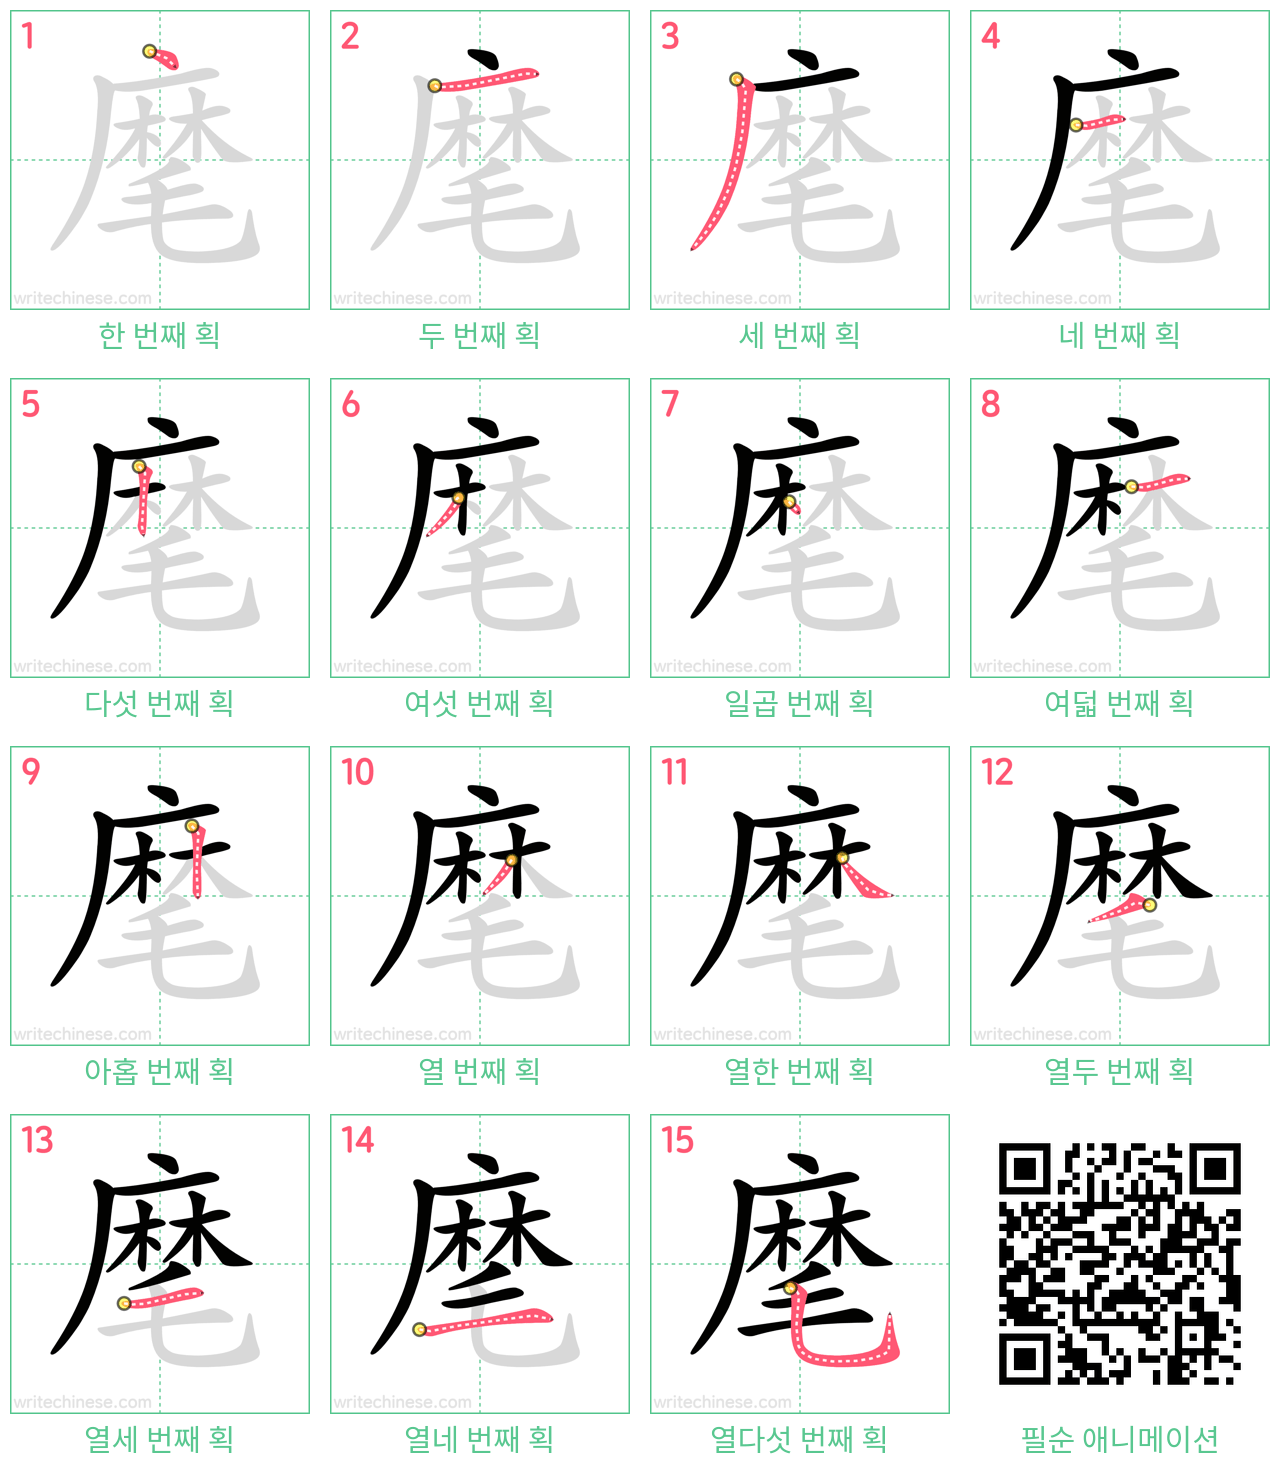 麾 step-by-step stroke order diagrams